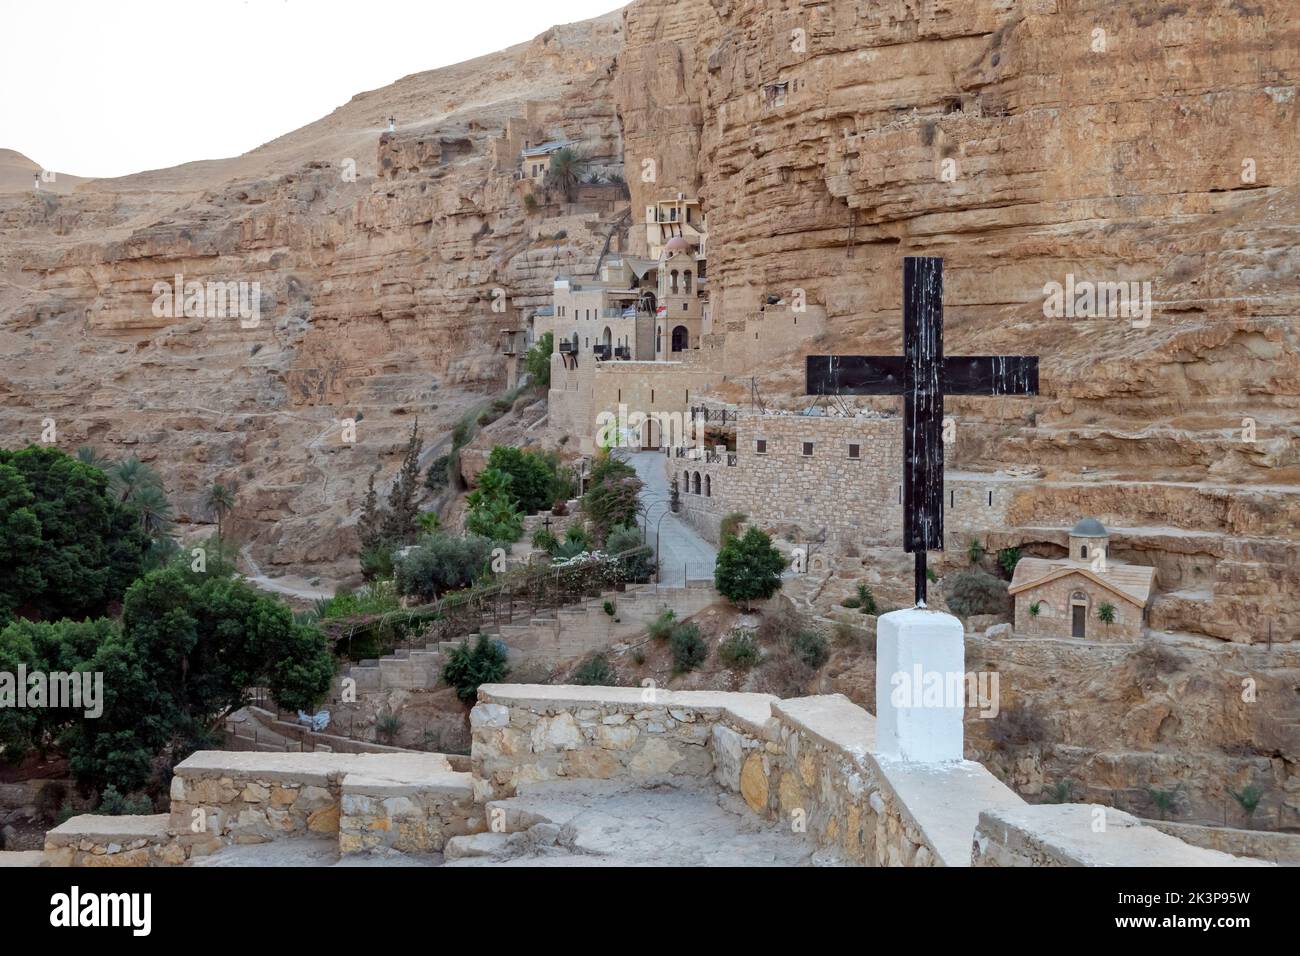 Le monastère de Saint-Georges de Koziba, niché dans la vallée luxuriante du désert de Wadi Qelt, Judée ou Judée en Israël Banque D'Images